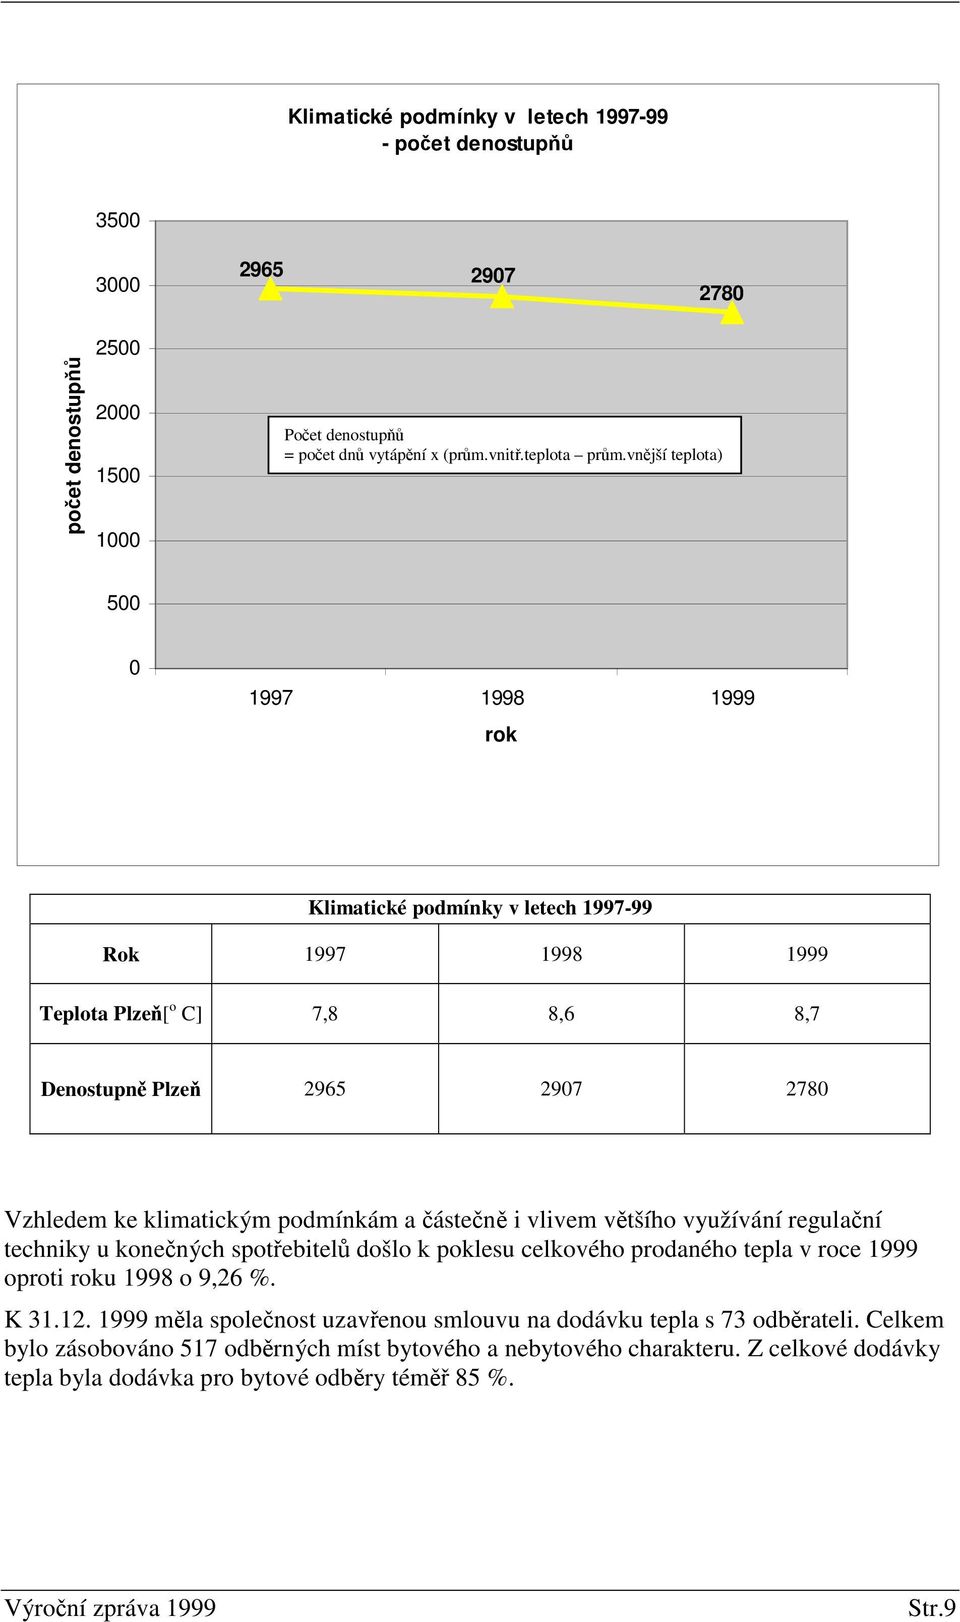 podmínkám a ásten i vlivem vtšího využívání regulaní techniky u konených spotebitel došlo k poklesu celkového prodaného tepla v roce 1999 oproti roku 1998 o 9,26 %. K 31.12.